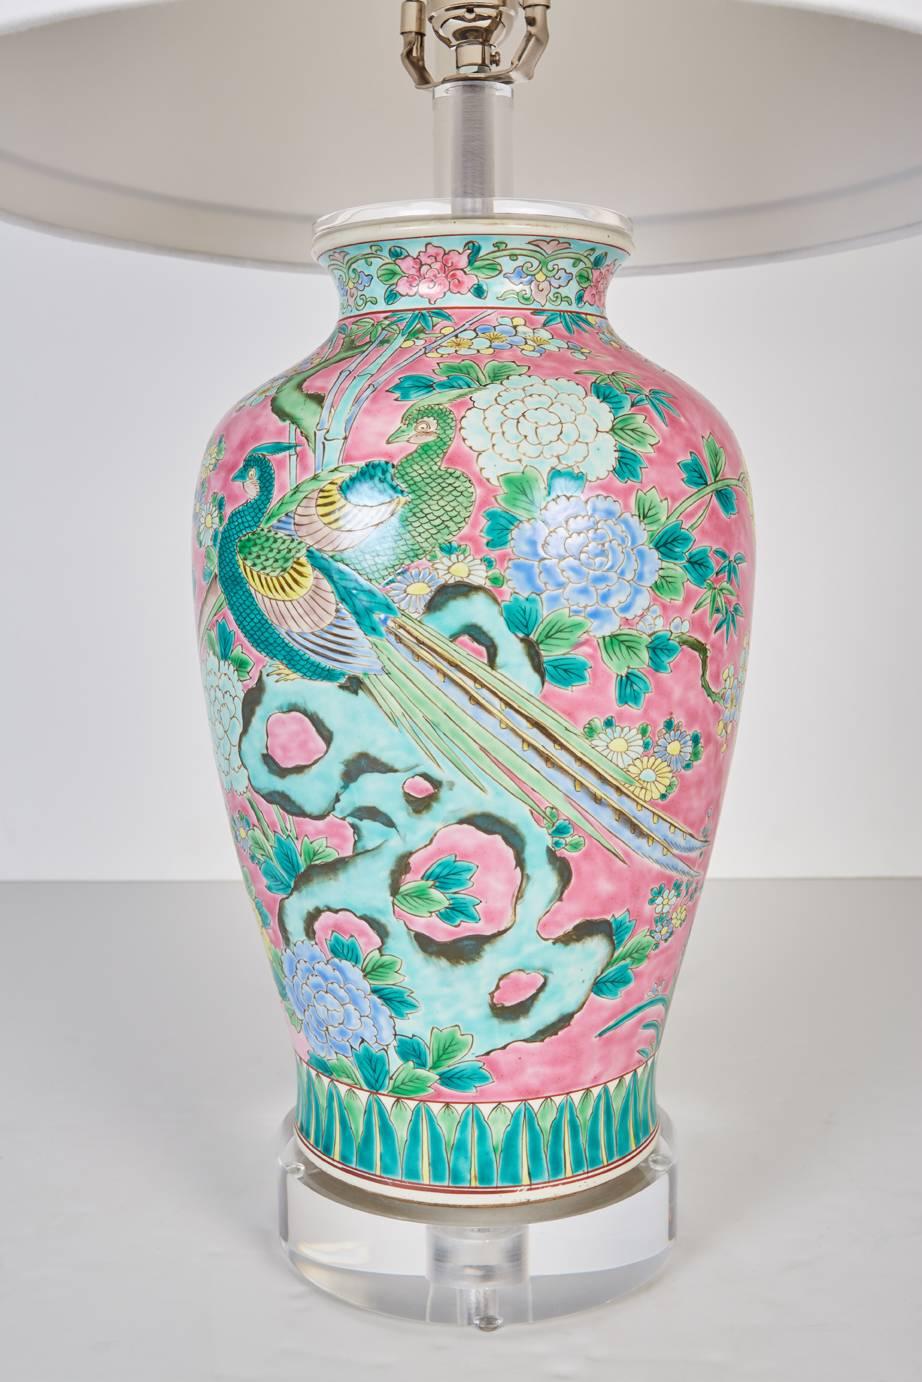 Vase japonais ancien nouvellement monté sur mesure comme lampe. Peint dans un style chinois avec des motifs floraux et d'oiseaux multicolores sur un fond rose vibrant, maintenant monté sur mesure comme lampe. Lampe équipée d'une nouvelle base en